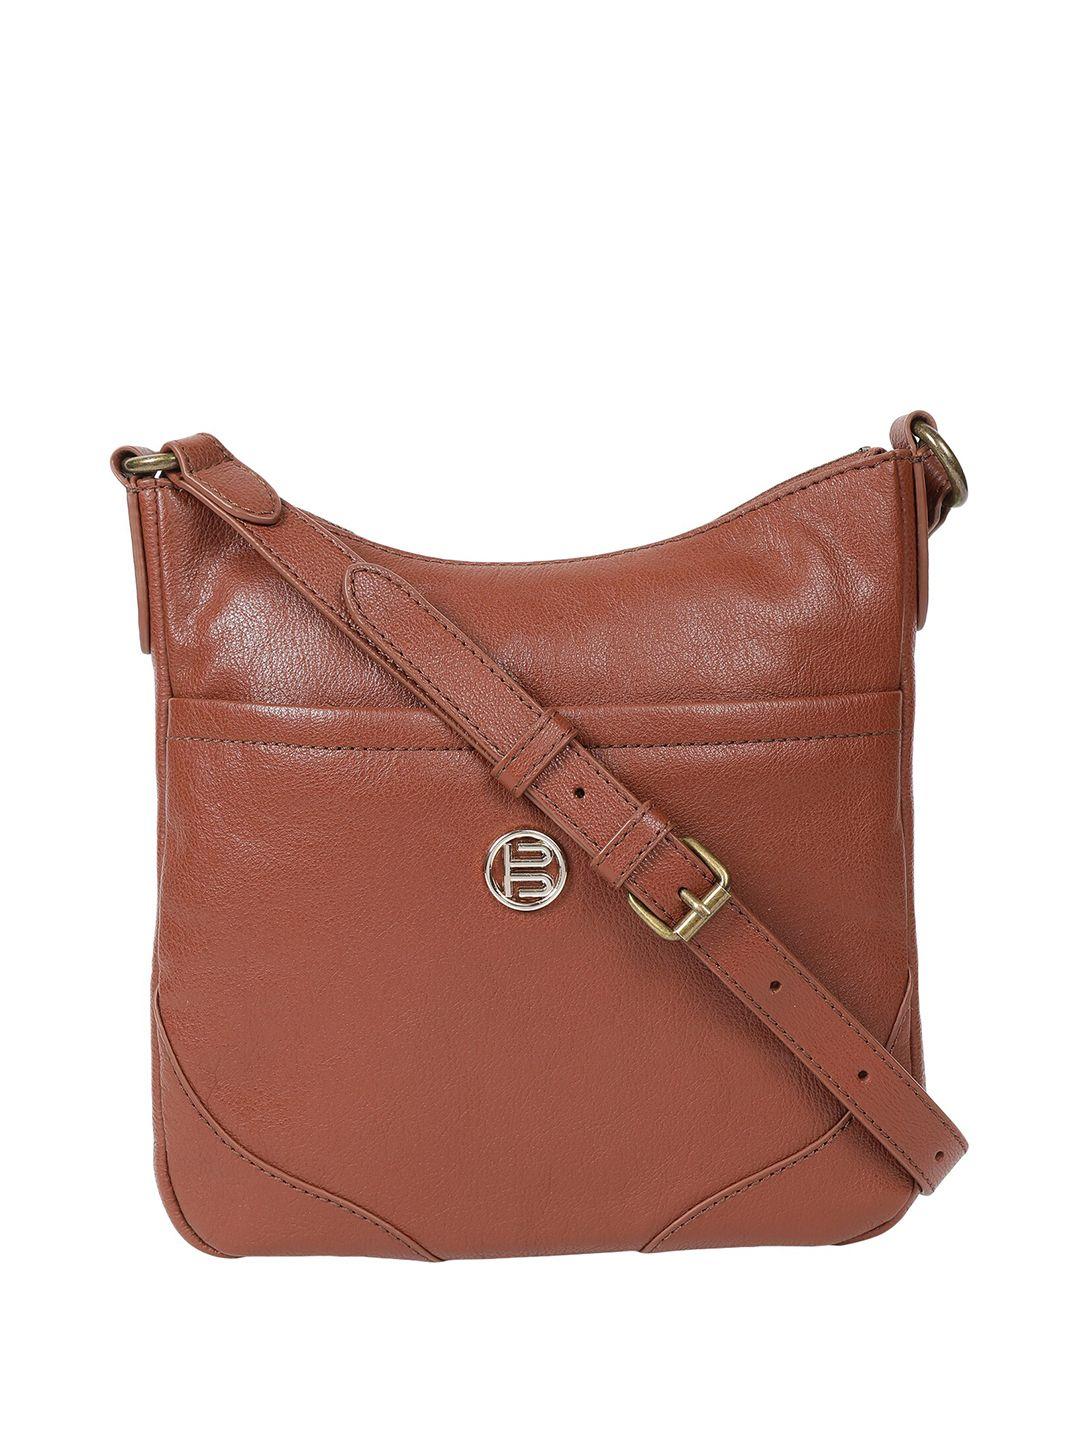 bagatt women textured leather messenger bag